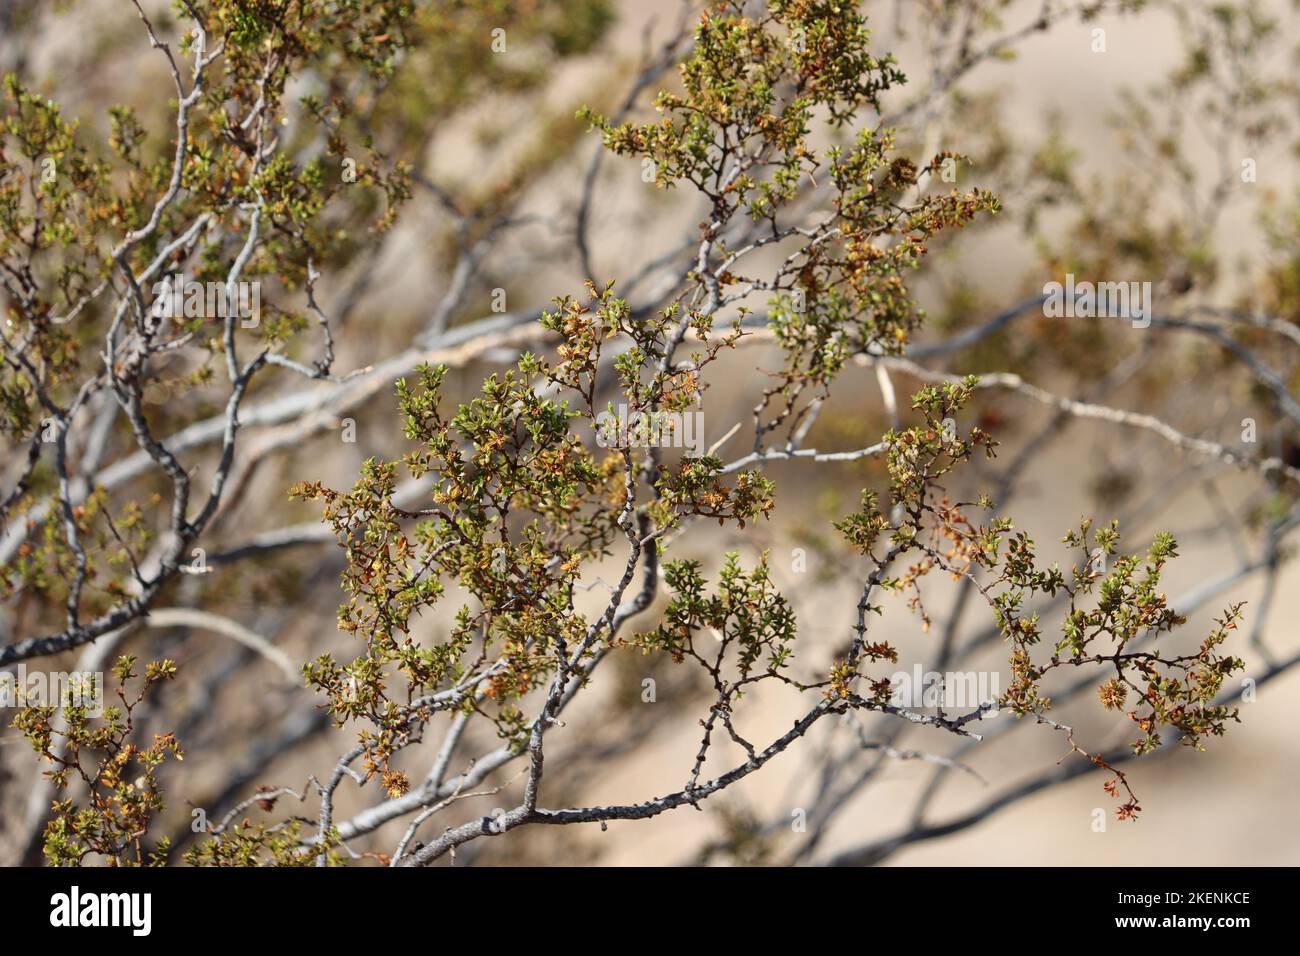 Green bifoliolately compound resinous obliquely lanceolate leaves of Larrea Tridentata, Zygophyllaceae, native shrub in the El Paso Mountains, Autumn. Stock Photo